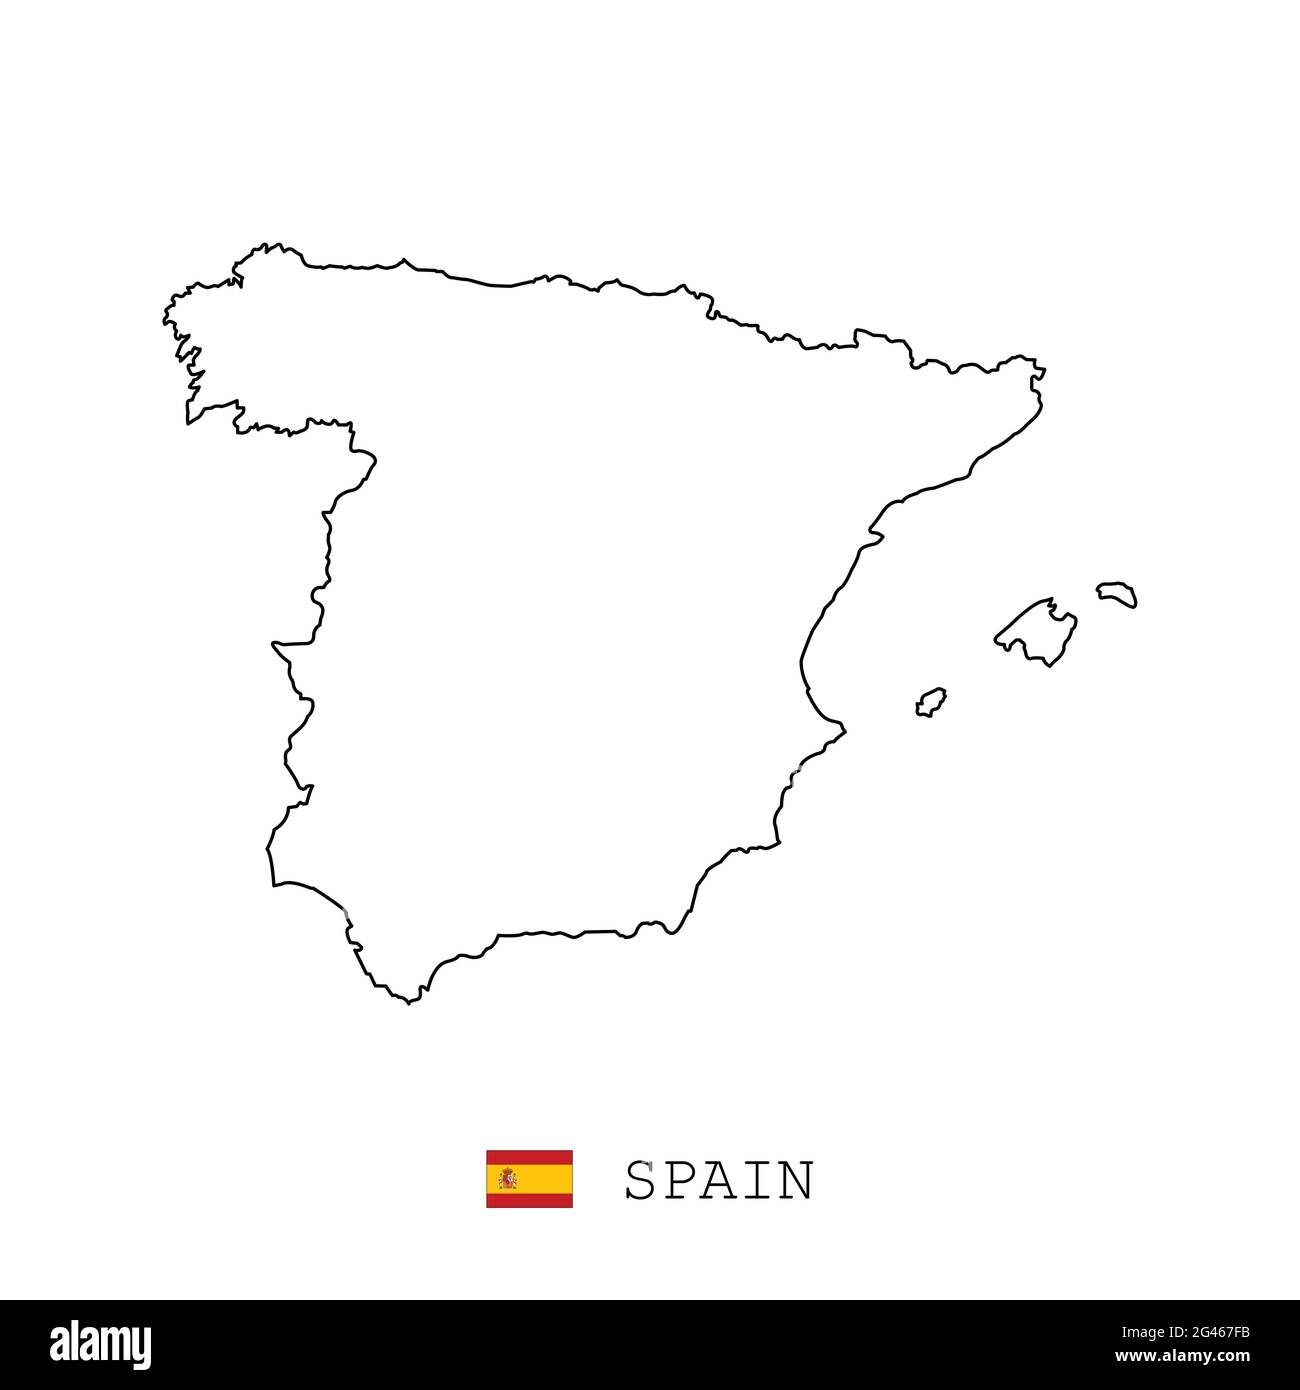 Espagne ligne de carte, linéaire fin vecteur simple contour e et drapeau. Noir sur fond blanc Illustration de Vecteur